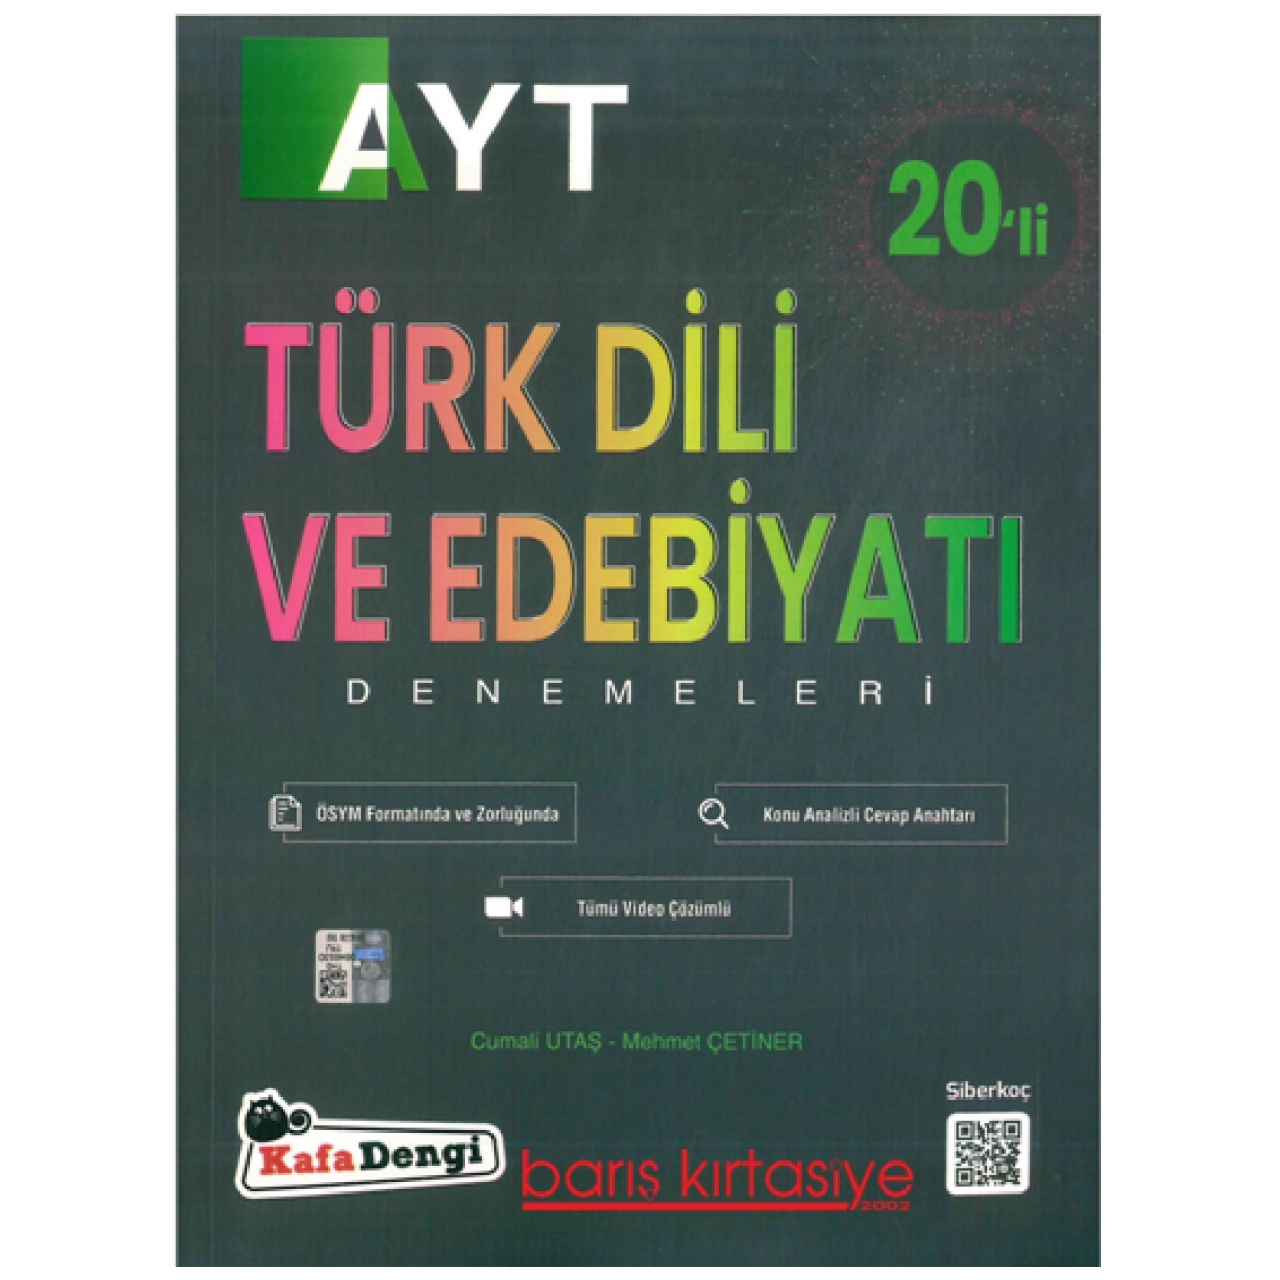 AYT Türk Dili ve Edebiyatı 20'li Branş Deneme Kafadengi Yayınları